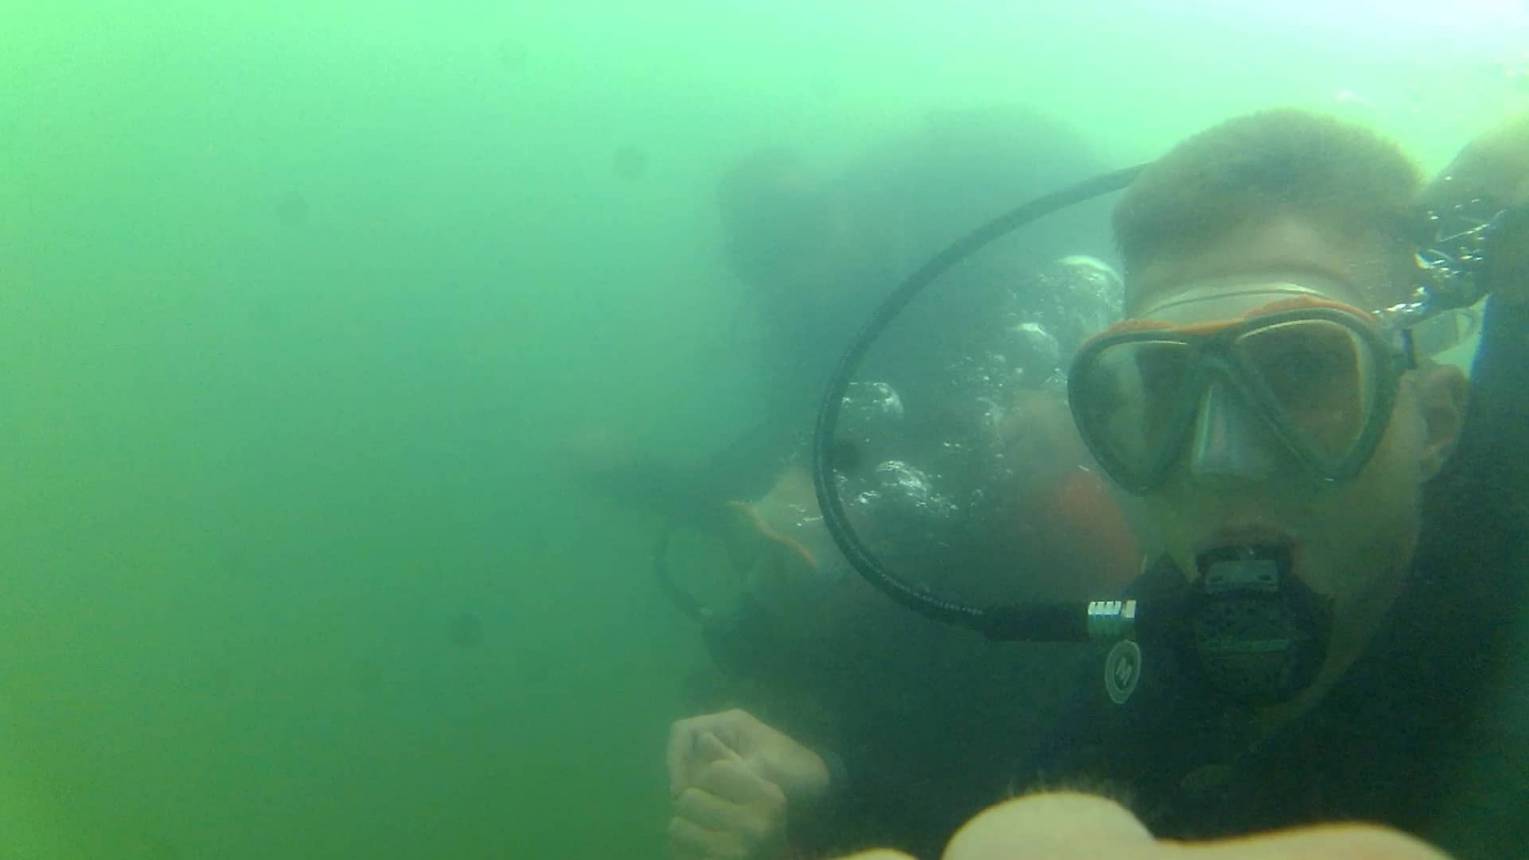 Leánykérés víz alatt, búvárkodás közben